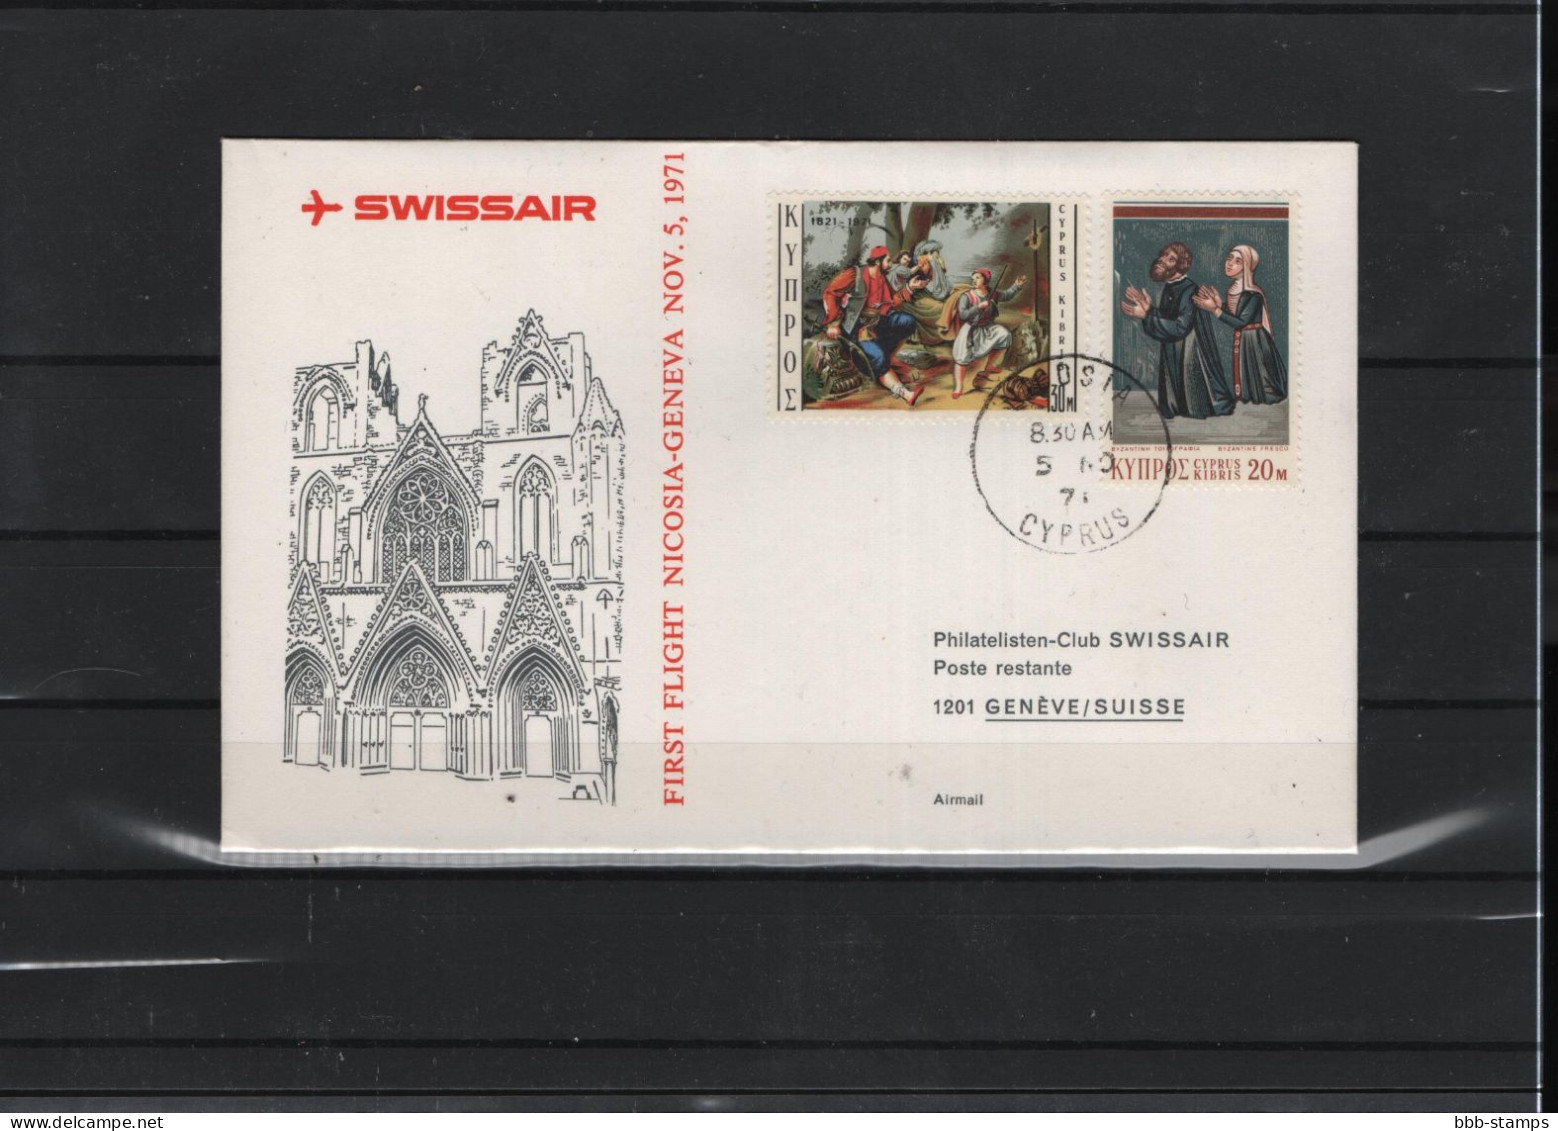 Schweiz Luftpost FFC Swissair  5.11.1971 - Primeros Vuelos